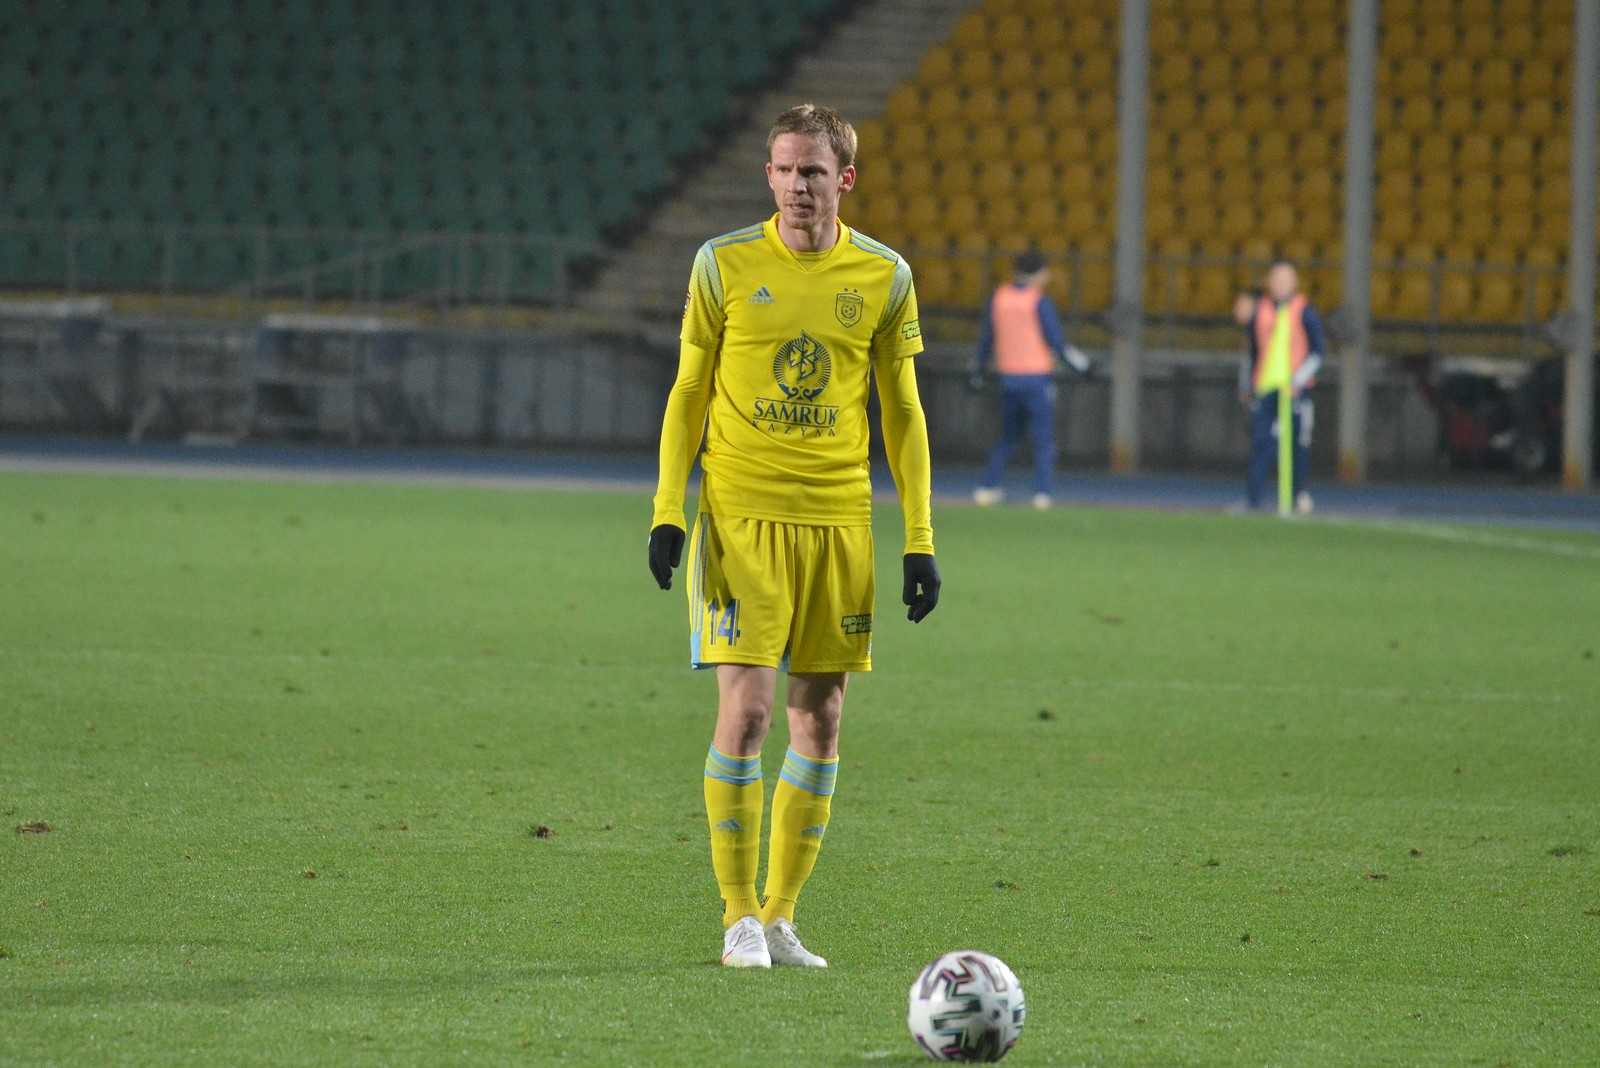 Марин Томасов – самый результативный футболист в истории «Астаны»